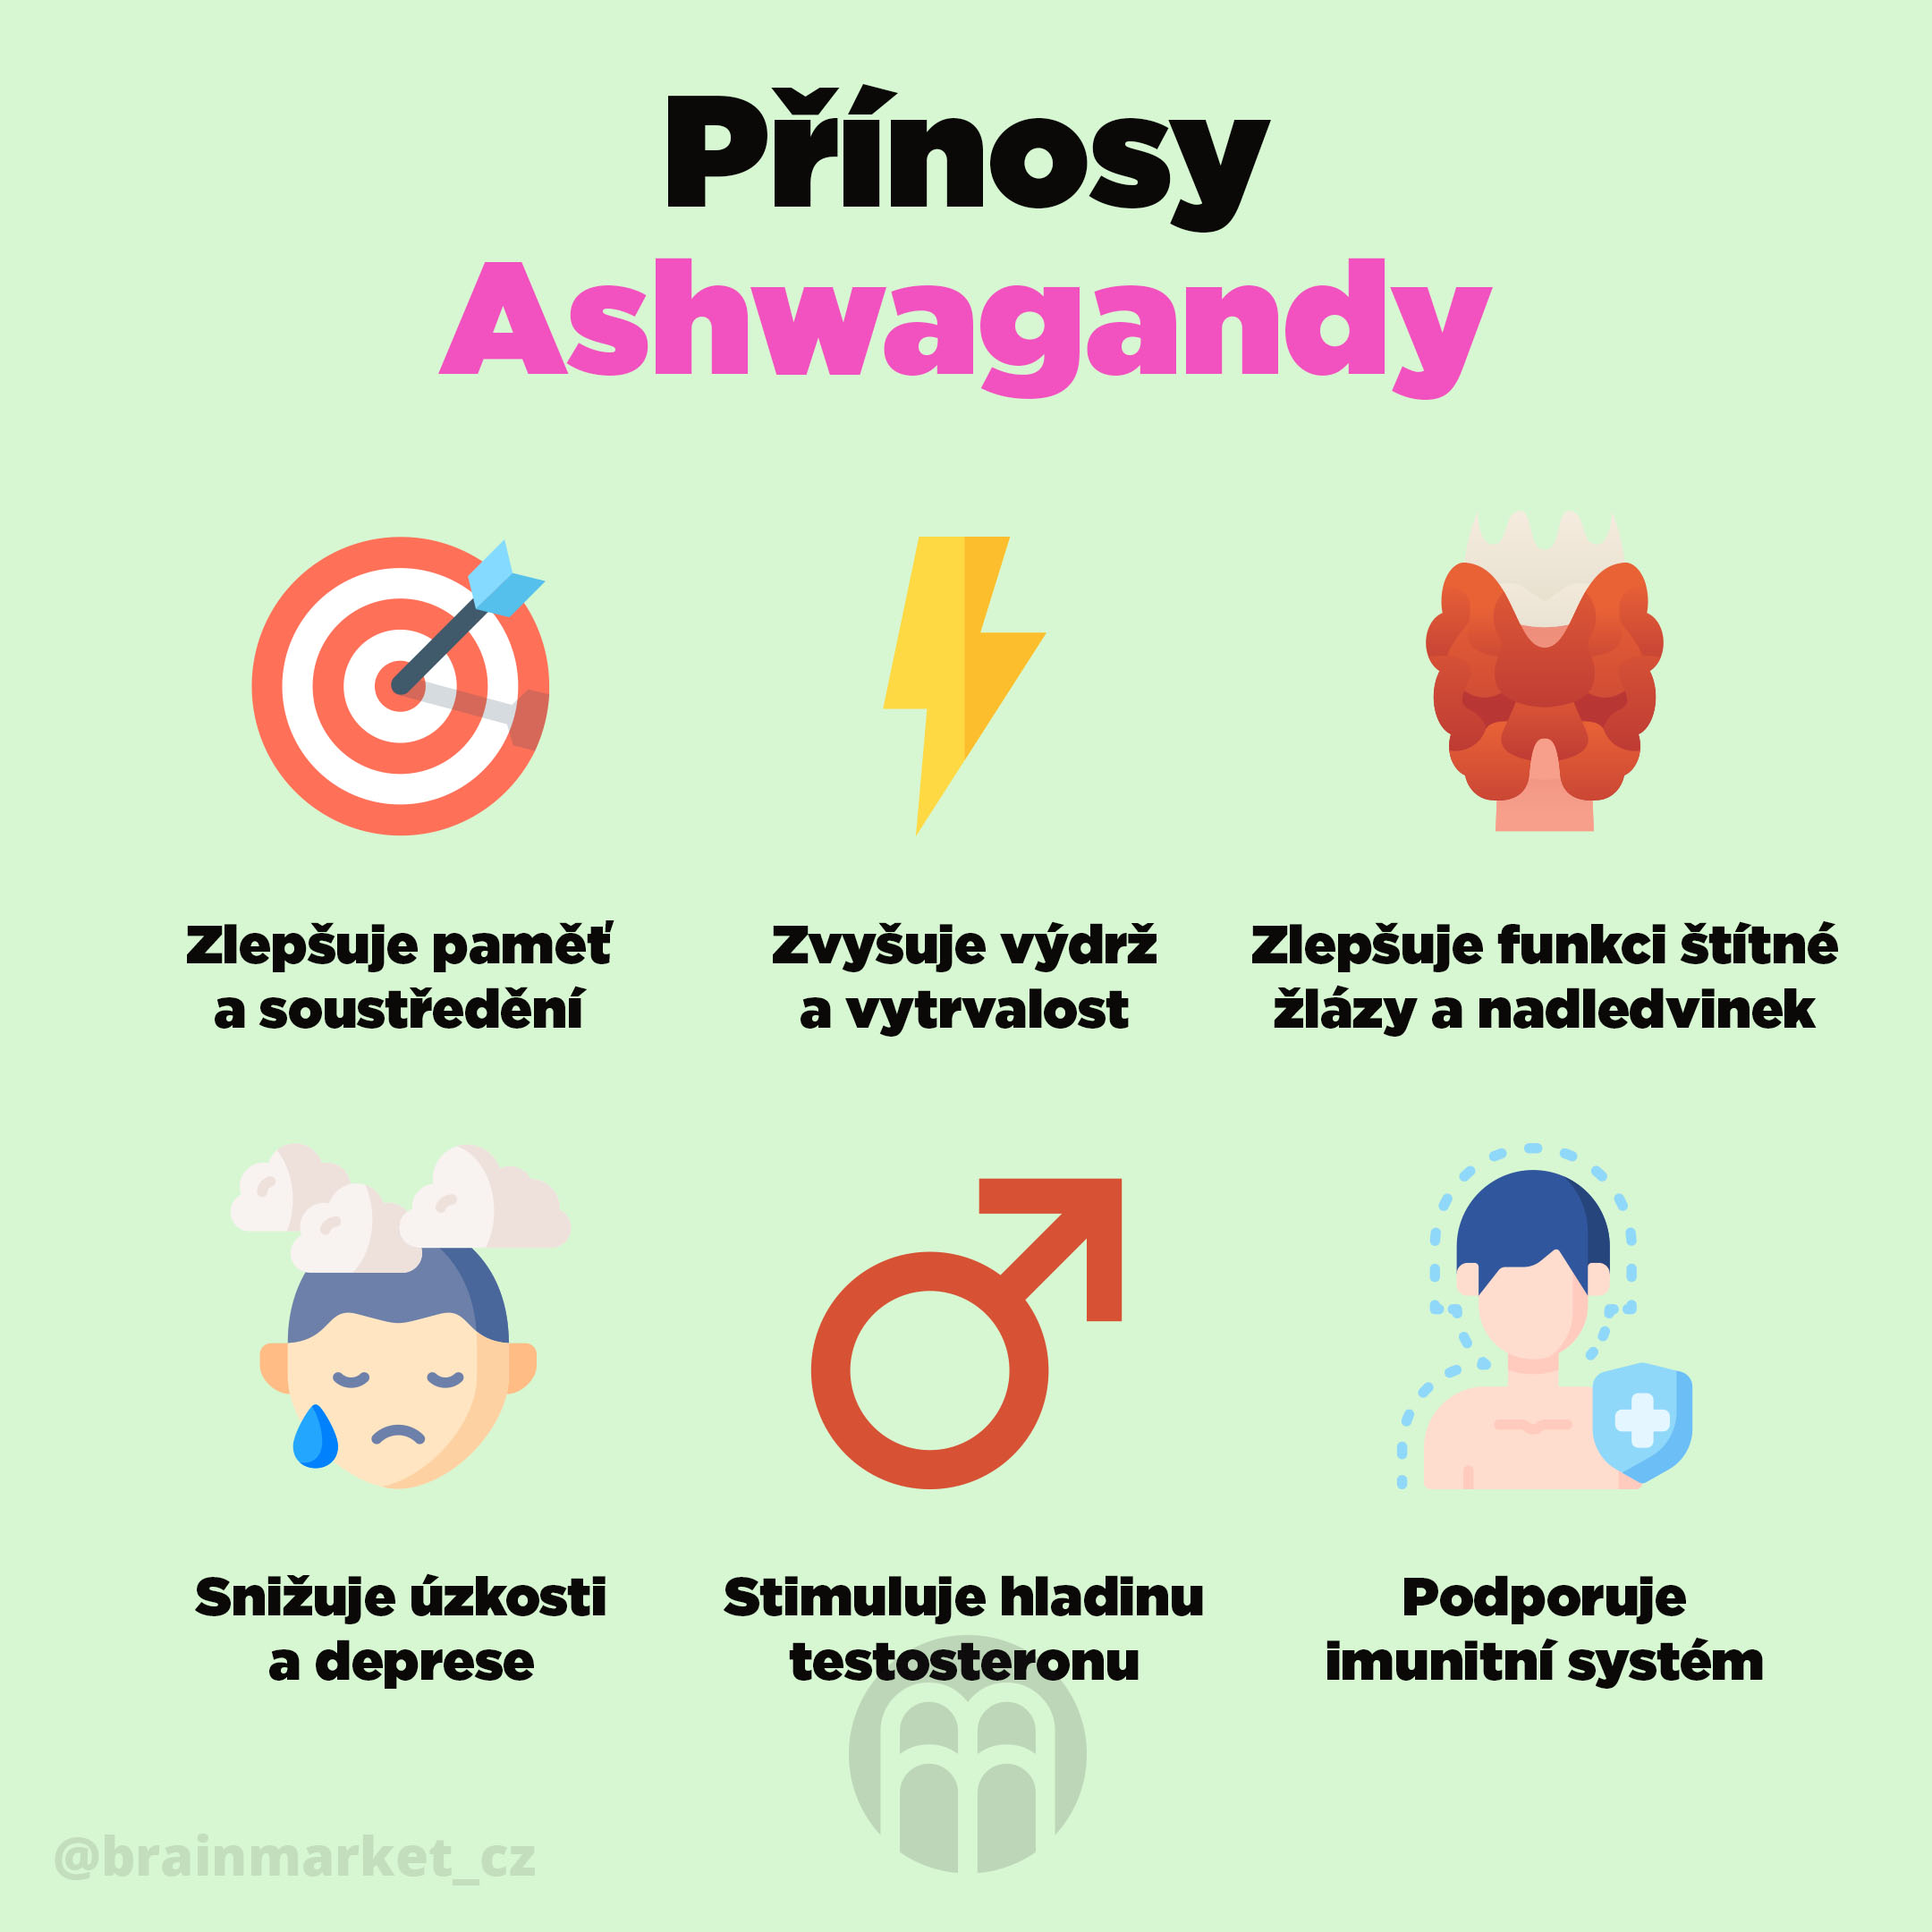 prinosy_ashwagandy_Infografika_Instagram_BrainMarket